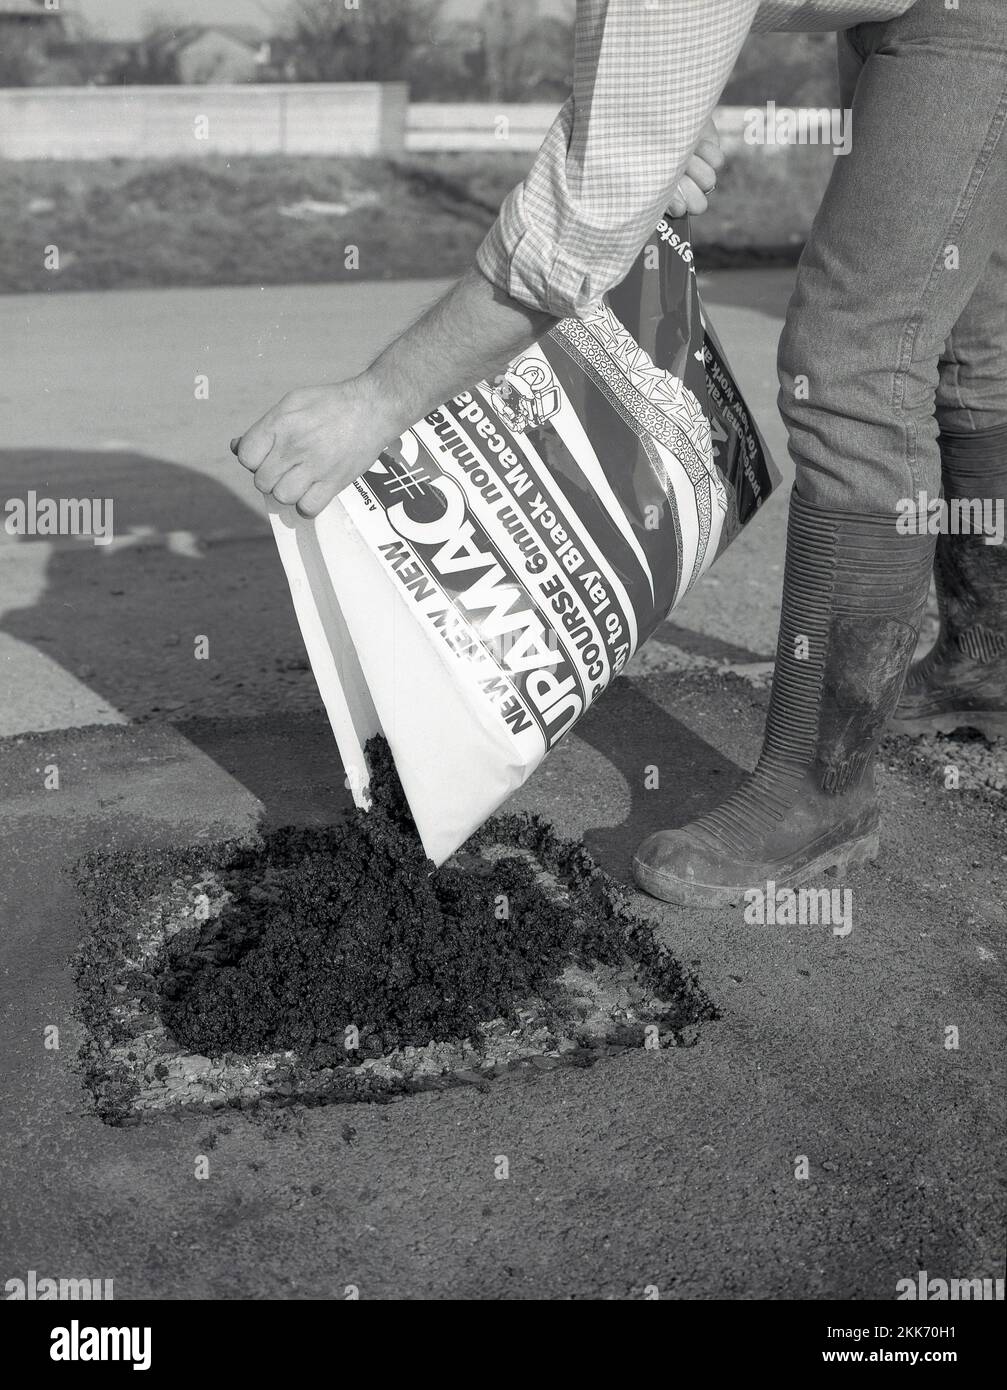 1980s, rifacing, un uomo che utilizza un sacchetto di un nuovo prodotto da costruzione per riparare o riparare un vialetto, un preparato-mix o pronto per posare tarmacadam nero o asfalto, noto come un catrame a freddo, Inghilterra, Regno Unito. Foto Stock